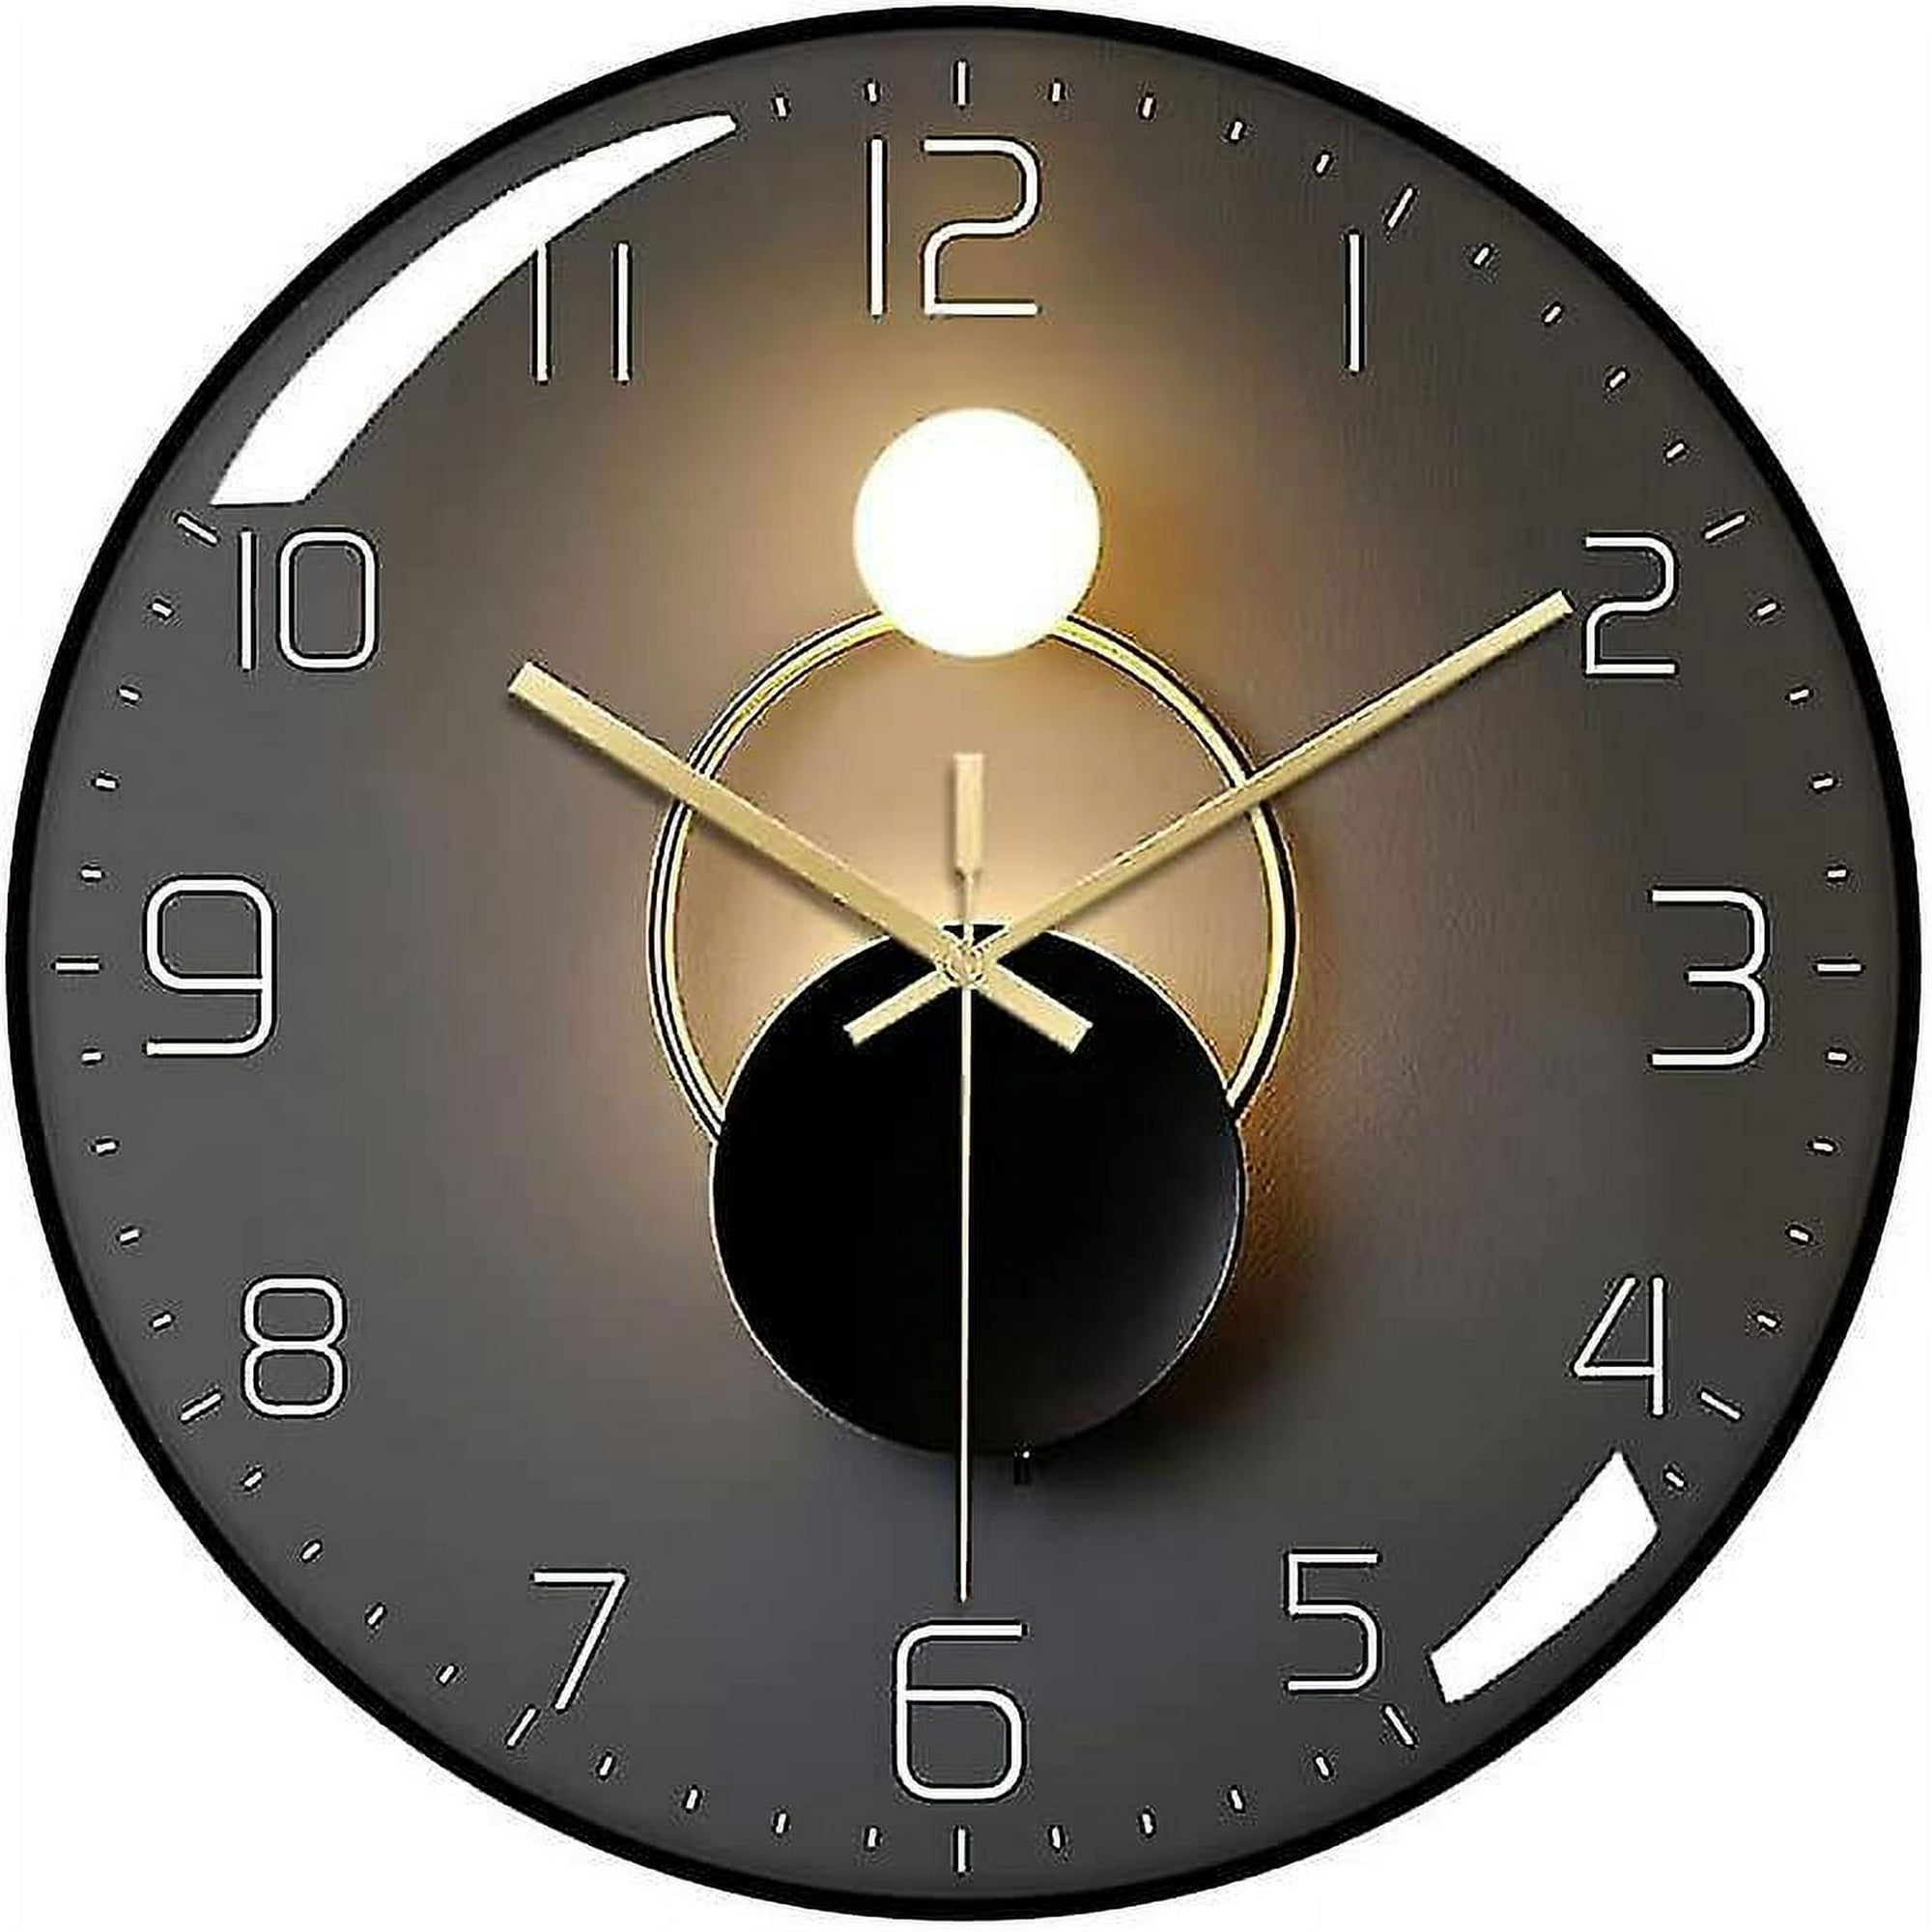 Redondo Péndulo Reloj De Pared Moderno Grande Silencioso Reloj con